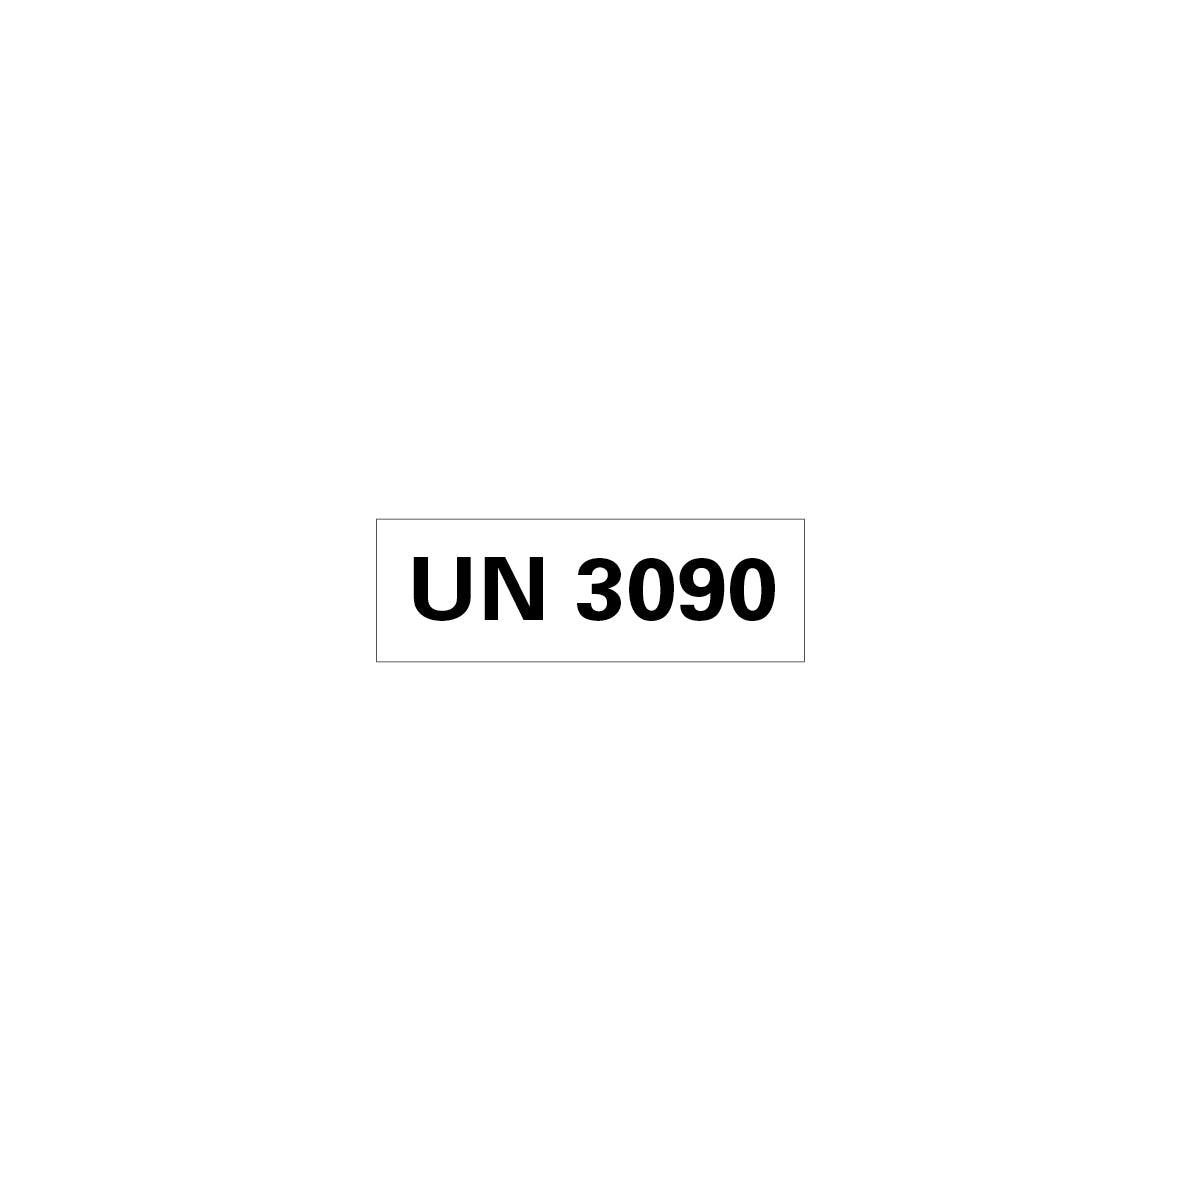 Gefahrgut UN, 5.0160.1, 150 x 50 mm, Stk., UN 3090 (Lithium-Metall-Batterien), auf Bogen, VE 10 Stk.